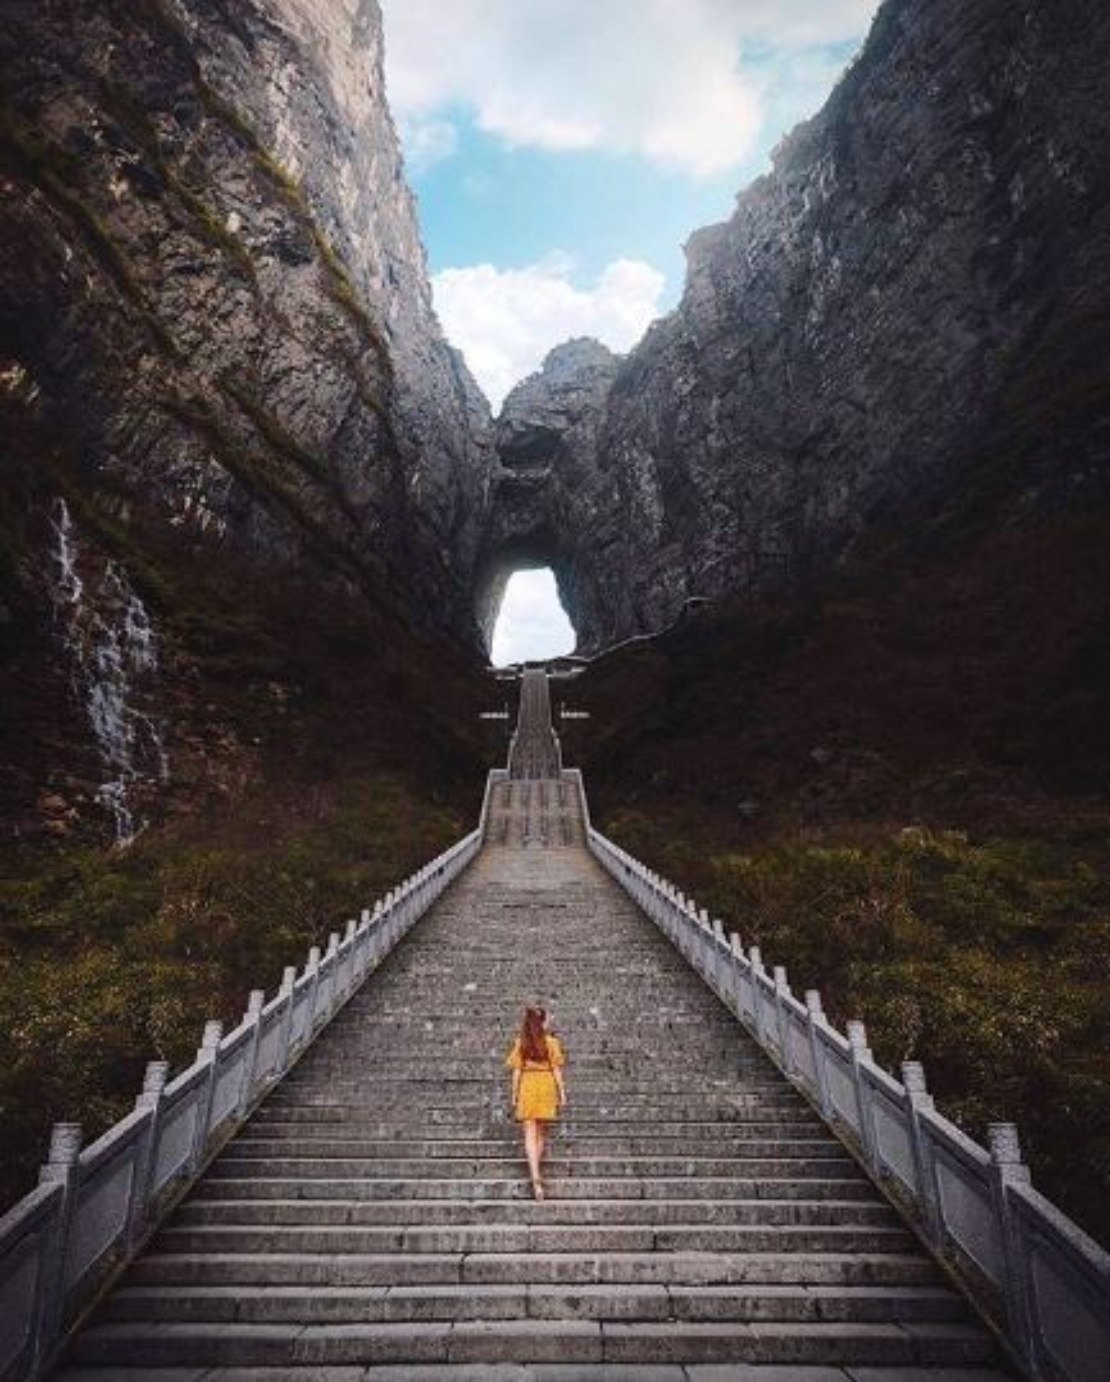 The famous 999 steps to Heaven’s Door at Tianmen Mountain National Park, Zhangjiajie